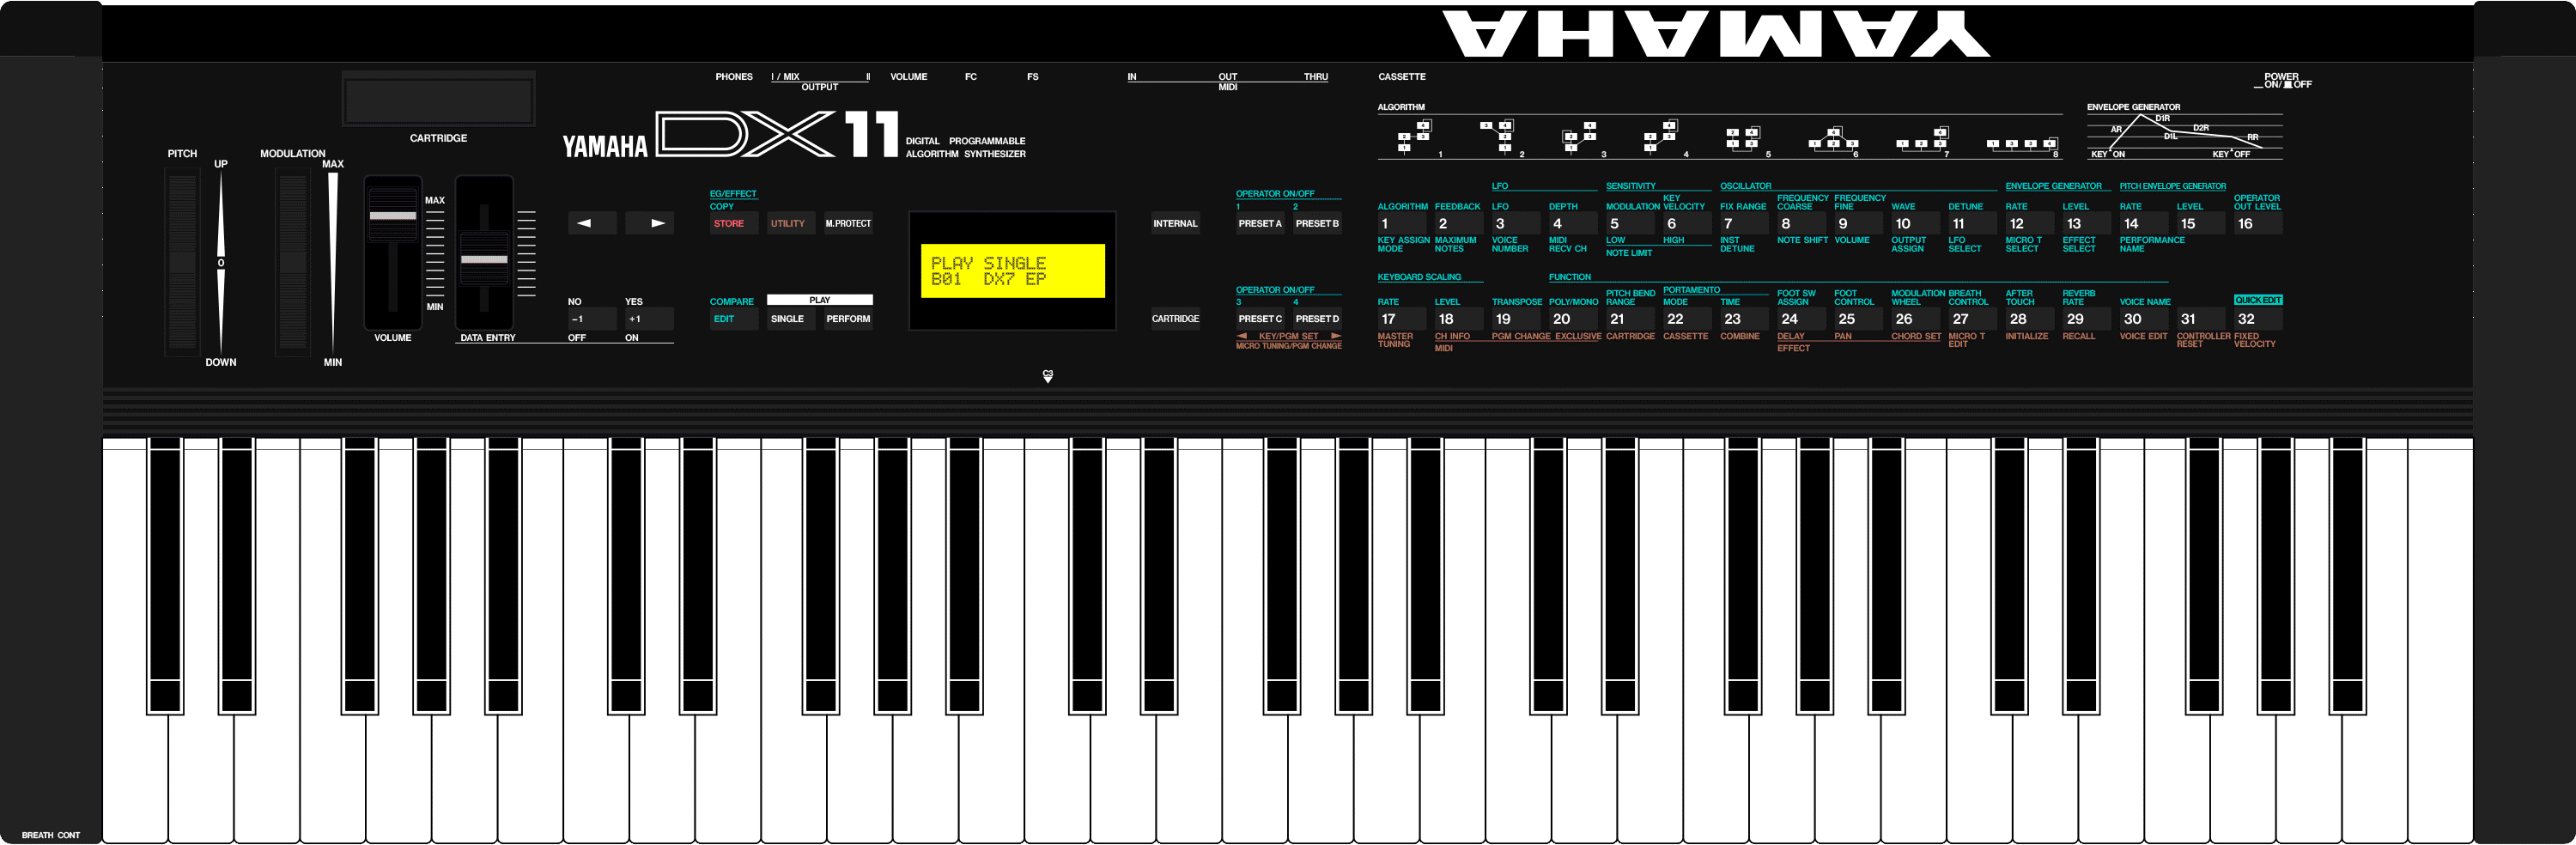 Yamaha V2 (DX11) | Synthesizers | Yamaha black boxes online archive